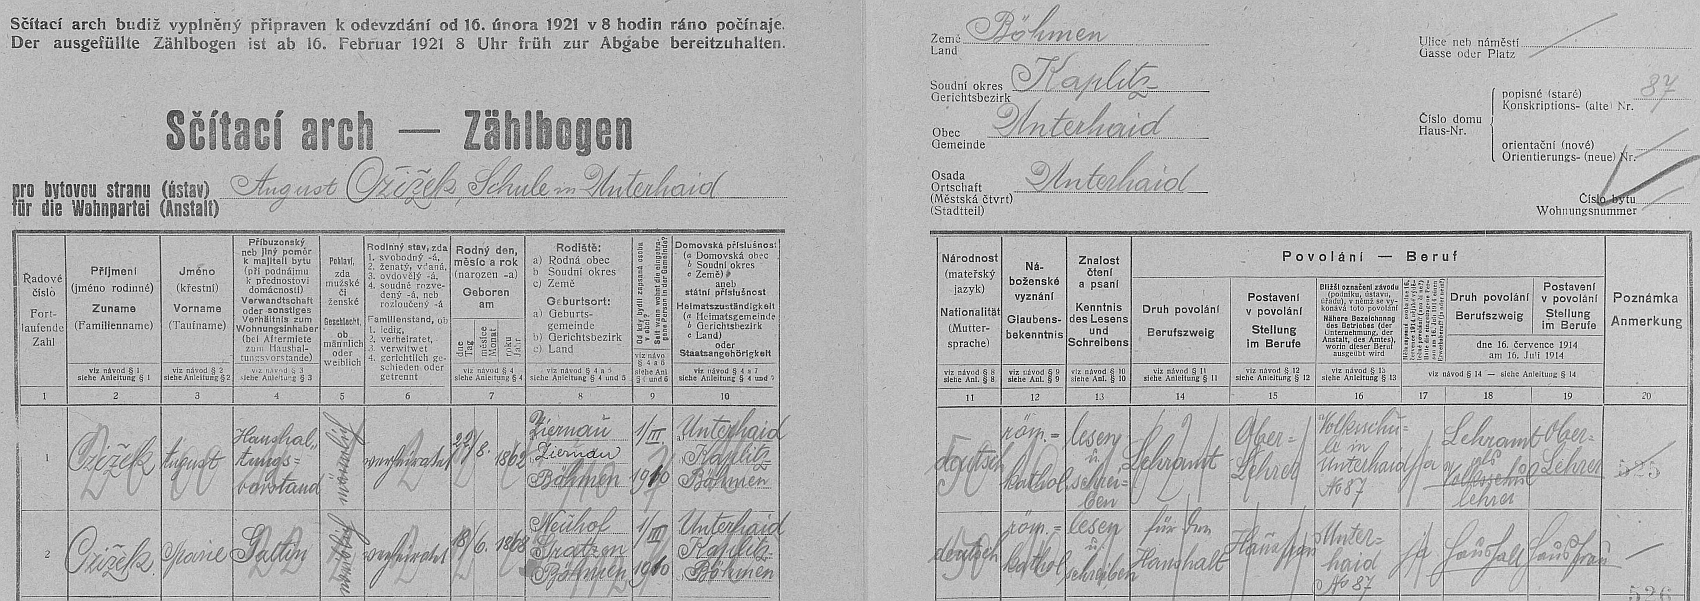 Arch sčítání lidu z roku 1921 pro dům čp. 87 v Dolním Dvořišti s manželi Czižekovými, on sám se tu tituluje jako "Haushalungsvorstand", tj. "přednosta domácnosti"